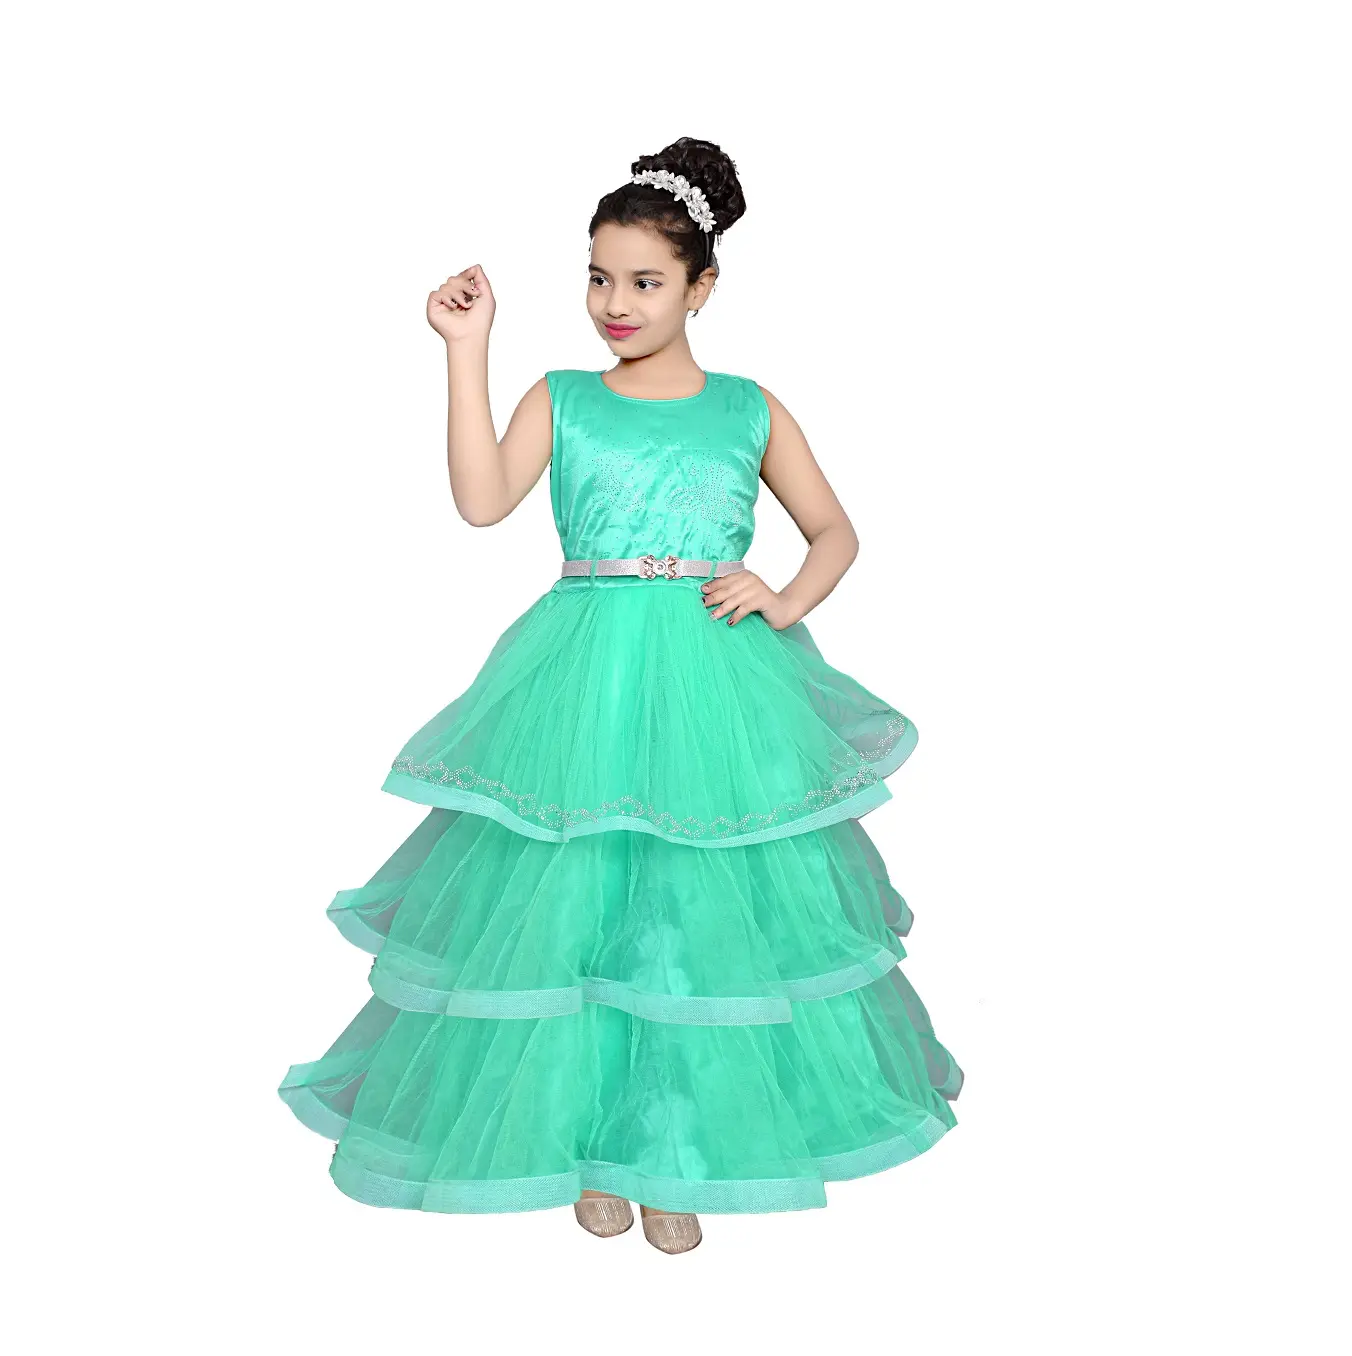 Pakaian anak perempuan desain terbaru pakaian pesta gaun bola padat untuk anak perempuan 3-10 tahun penggunaan memakai dari India